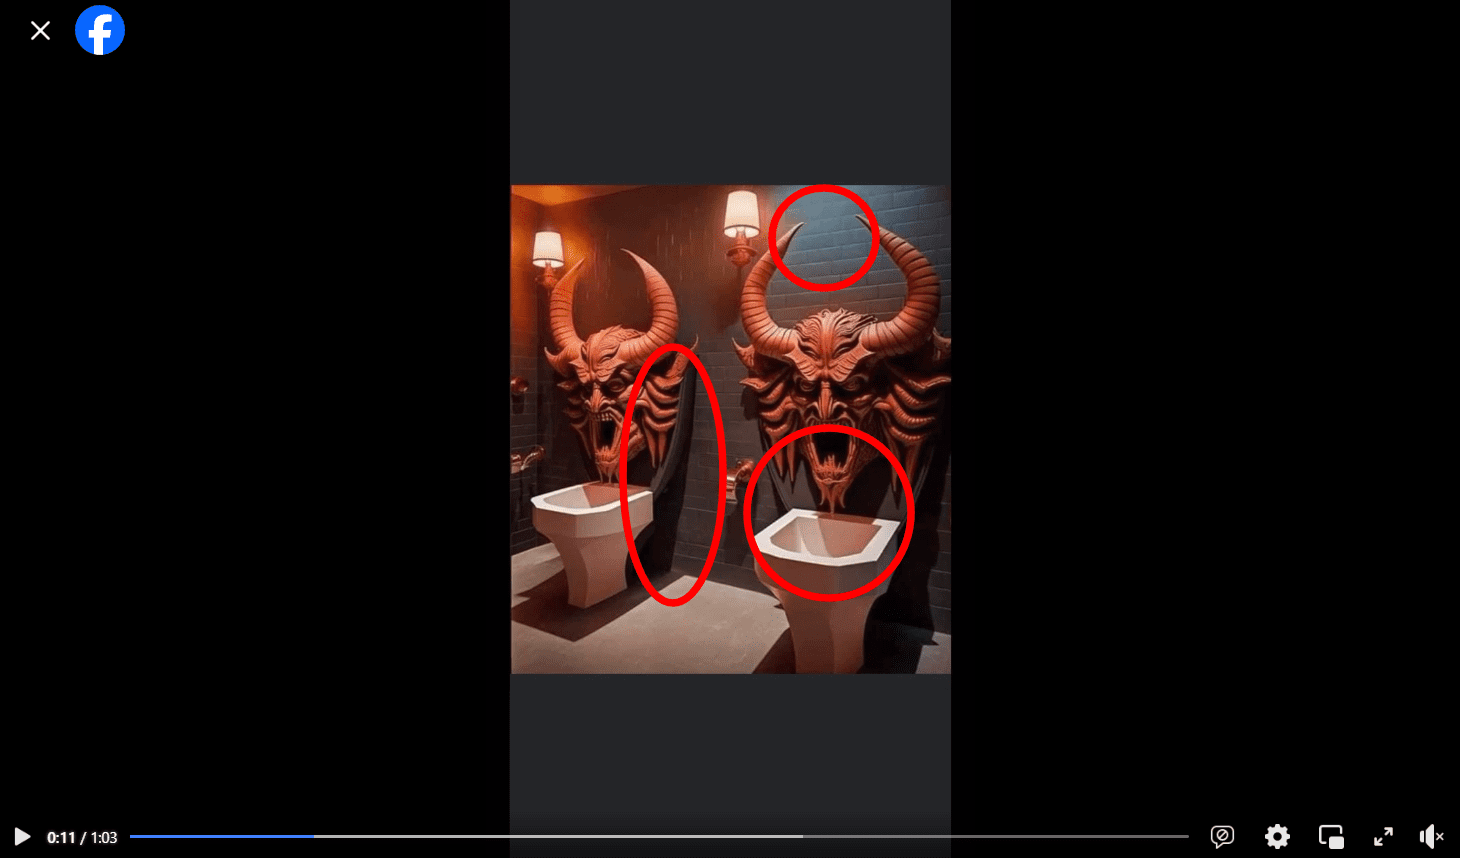 Zrzut ekranu z nagrania na Facebooku, na którym pokazano toaletę z rzeźbami diabła. Na obrazie zaznaczono niefunkcjonalne elementy toalety oraz błędne rozchodzenie się światła i cieni.